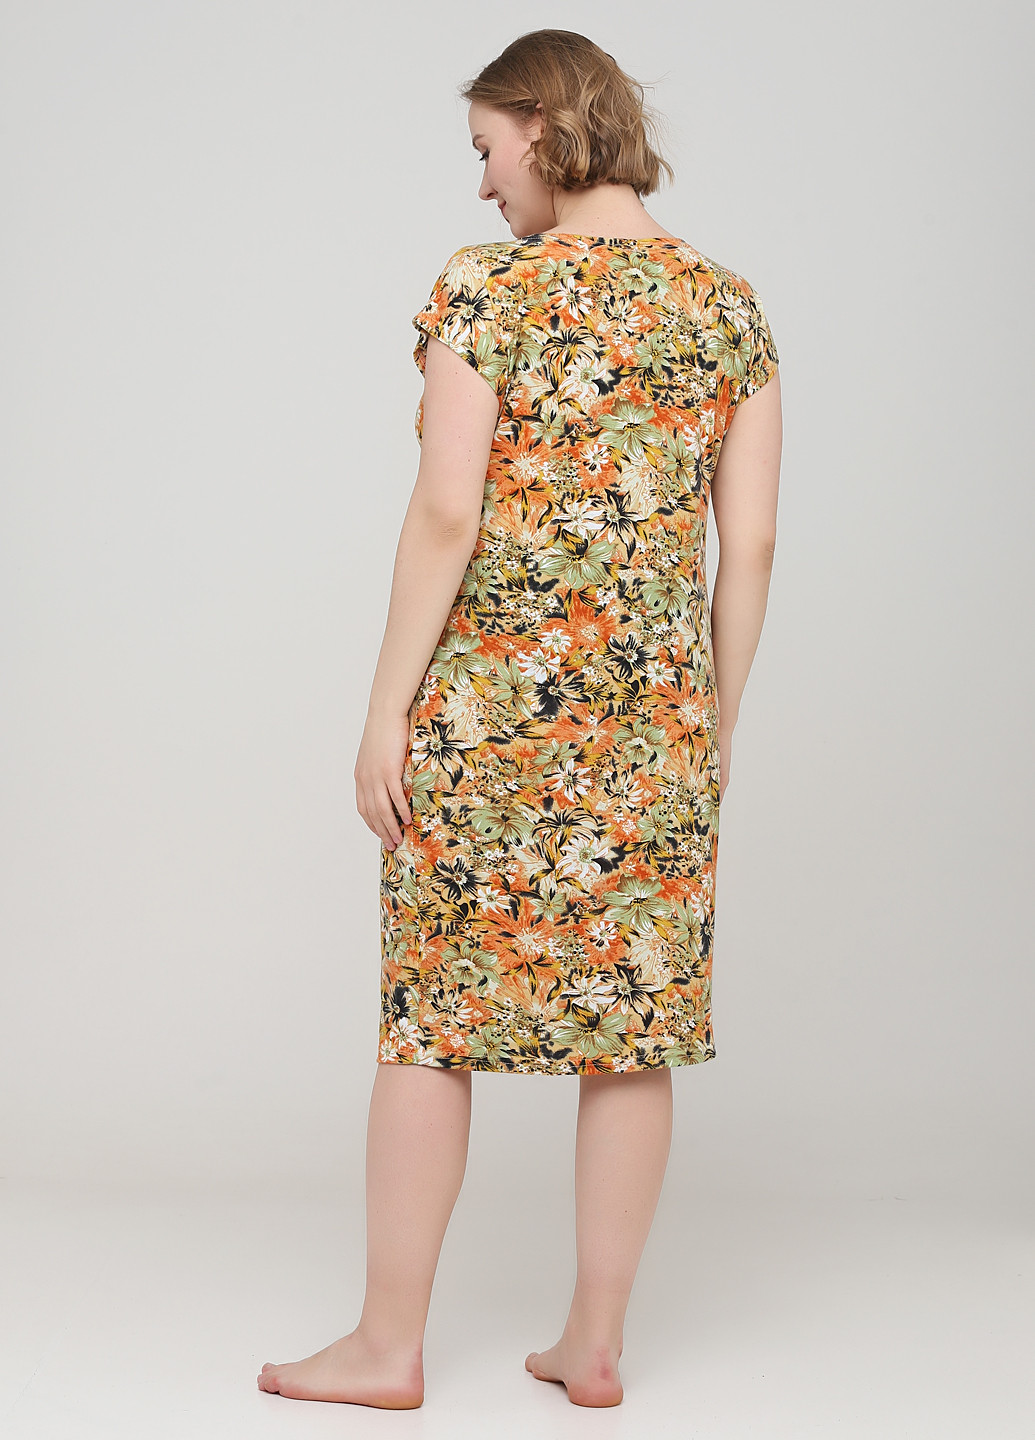 Комбинированное домашнее платье Трикомир с цветочным принтом